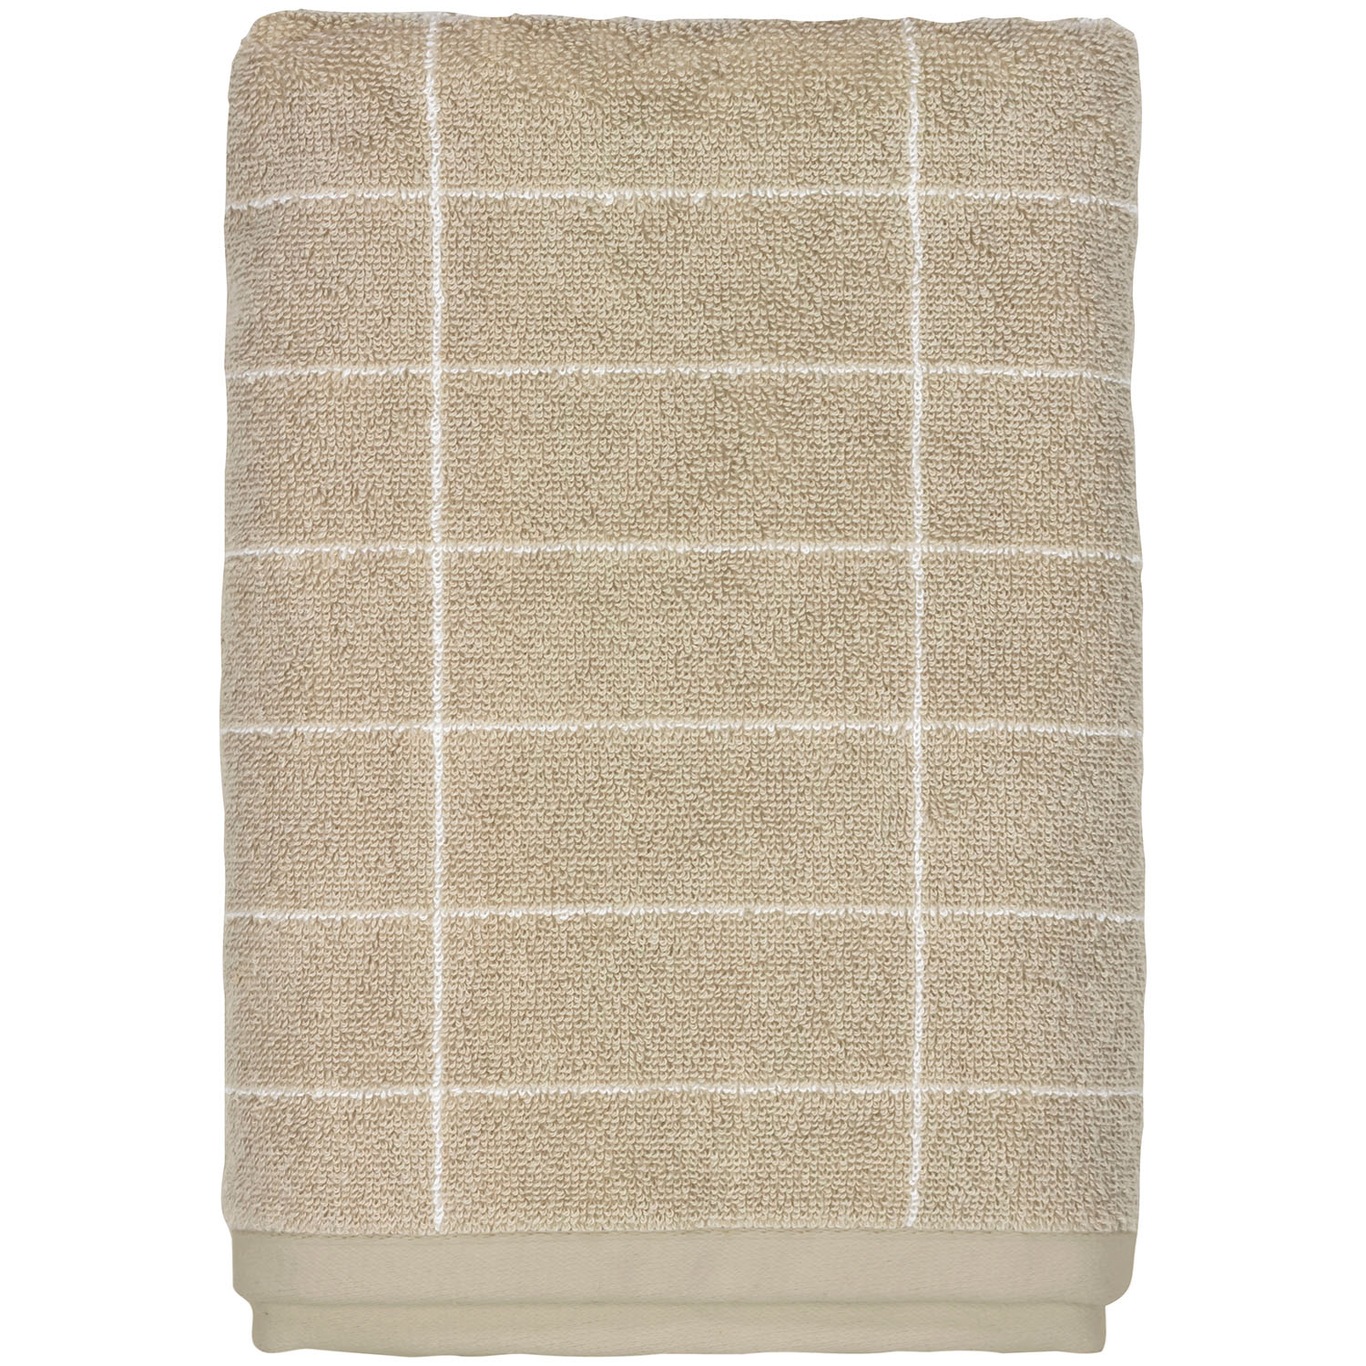 Tile Håndklæde Sand 2-pak, 38x60 cm